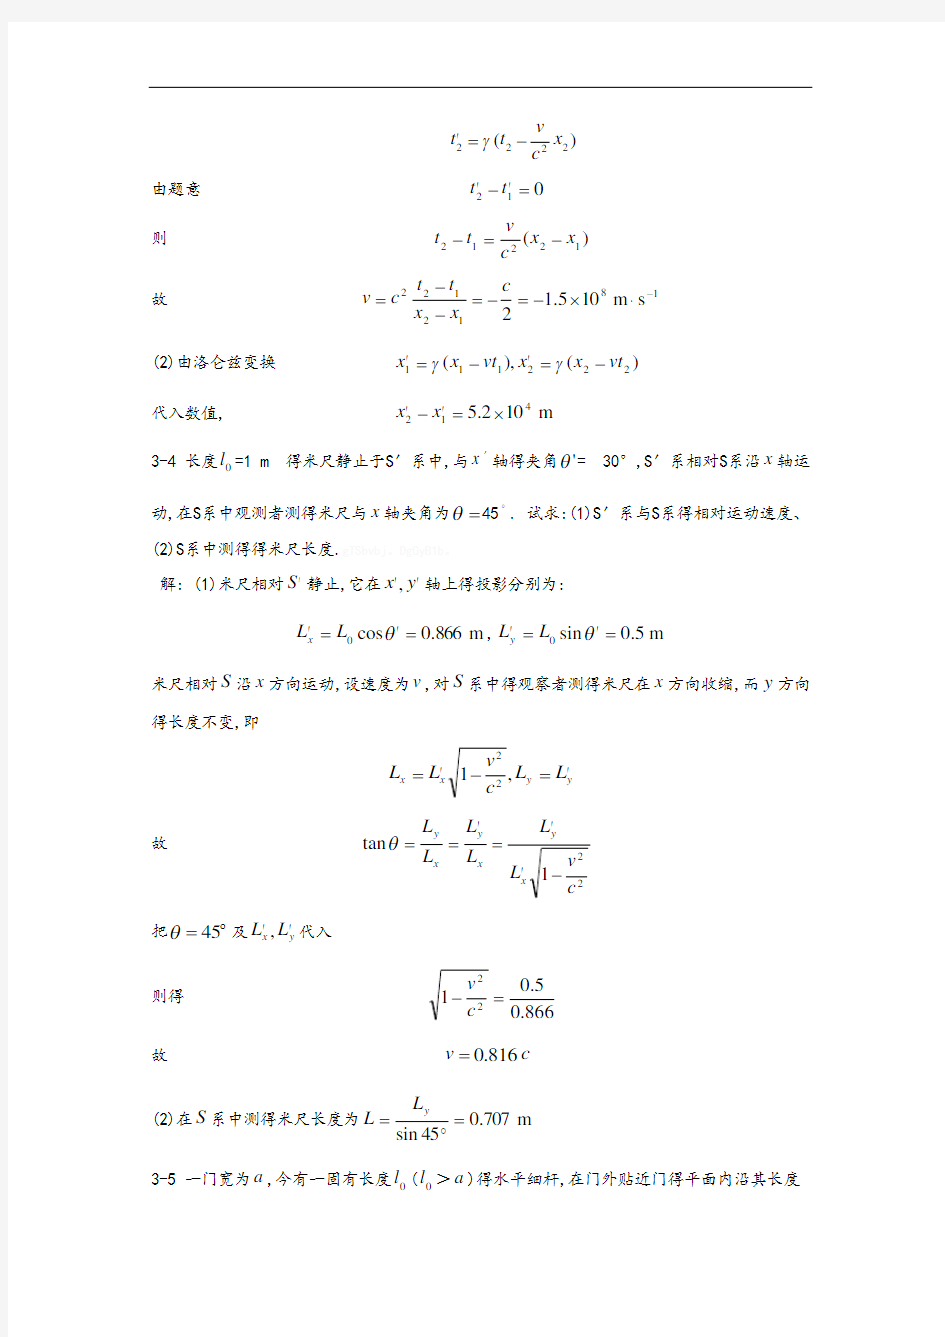 大学物理学(第三版)赵近芳 第三章答案